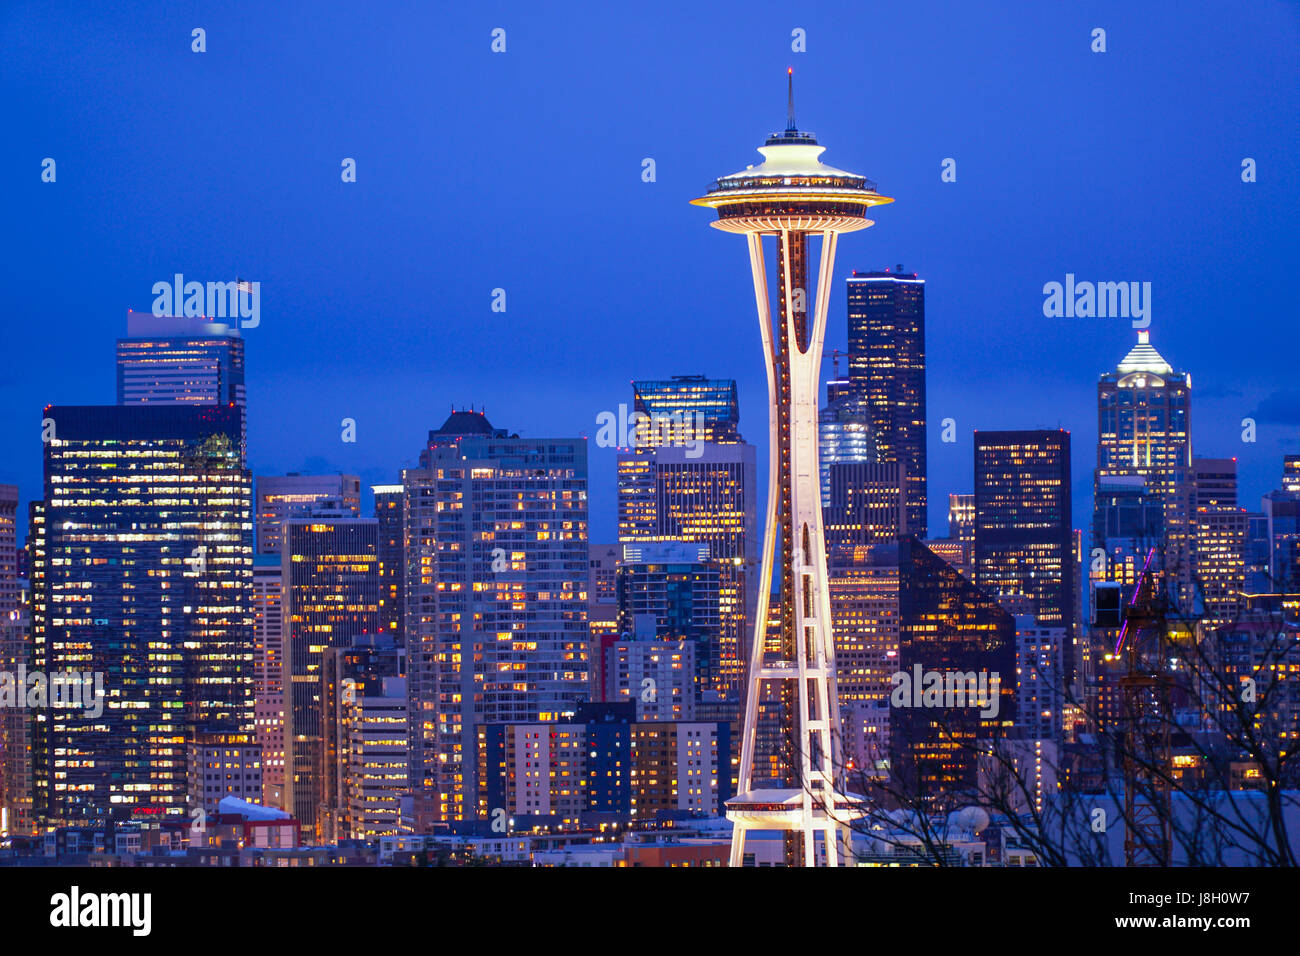 Seattle luci della città di notte - lo skyline con lo Space Needle - SEATTLE / WASHINGTON - 11 aprile 2017 Foto Stock